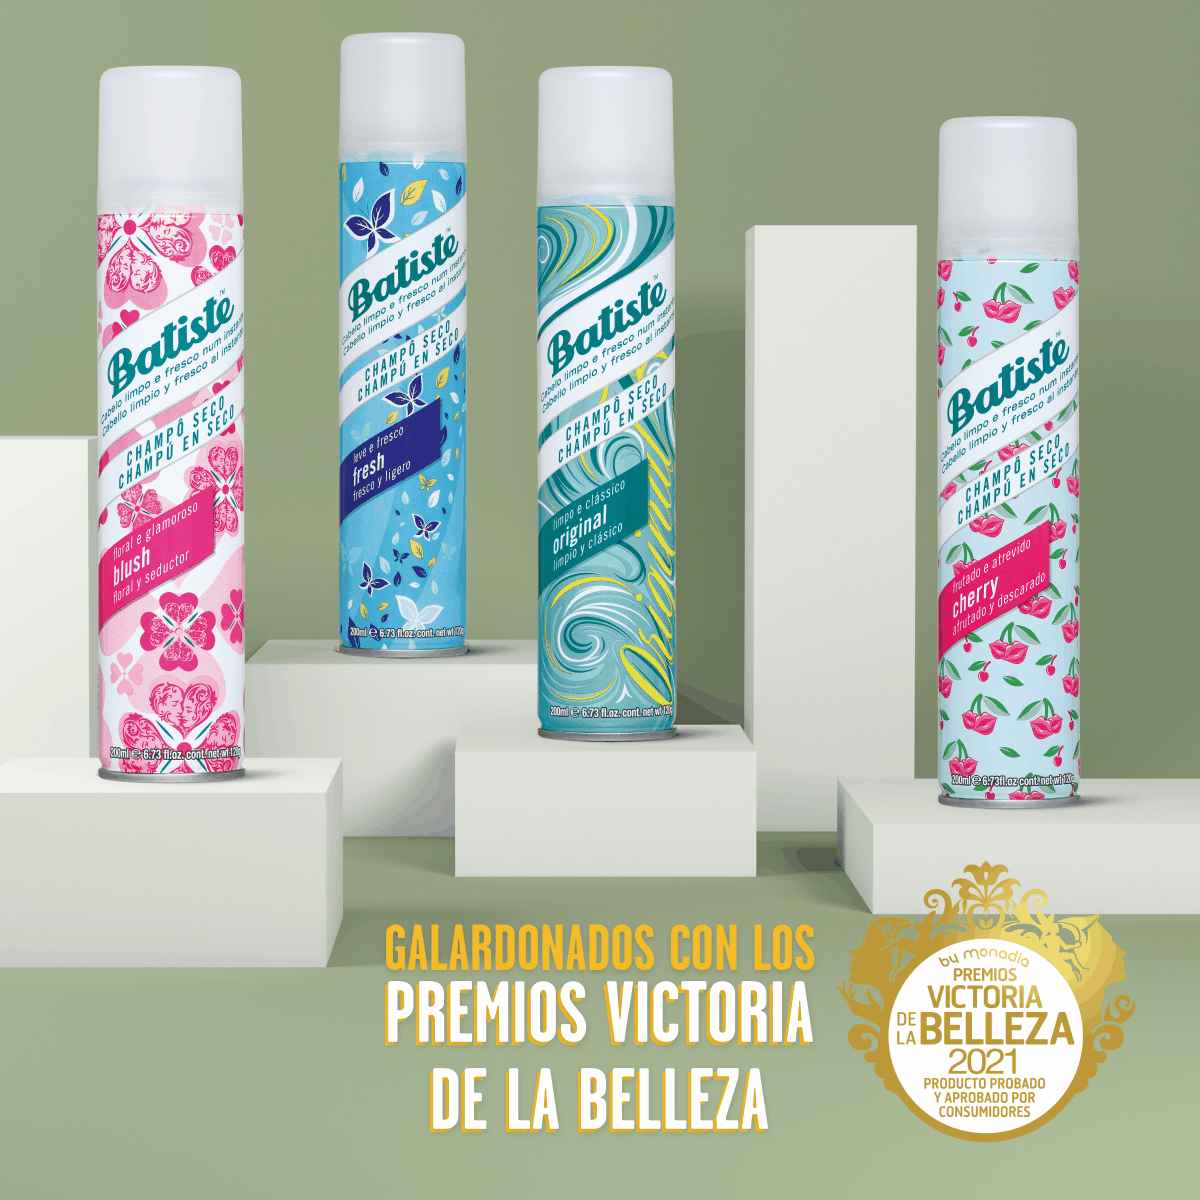 Champús en seco Batiste de la gama fragancia, galardonados por el sello de calidad Premios Victoria de la Belleza 